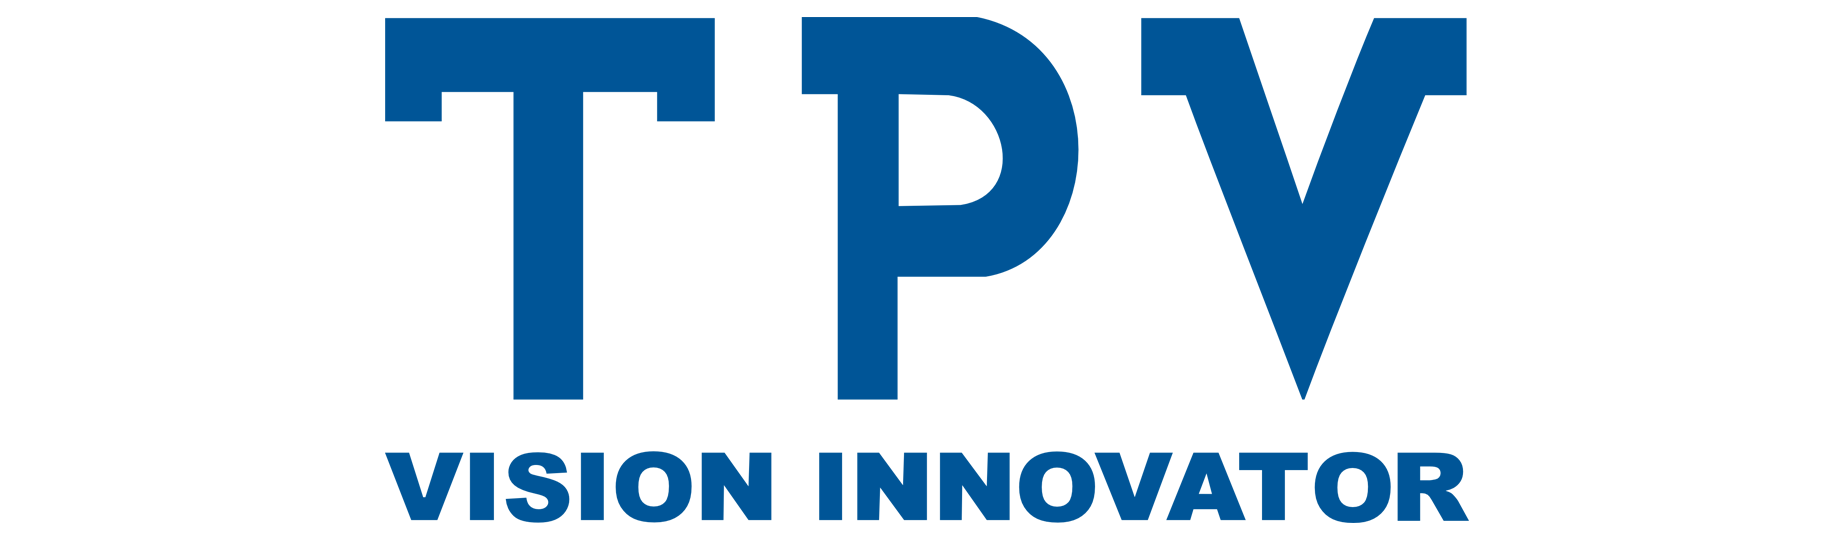 Ооо ай си эс. TPV логотип. TPV CIS лого. Завод TPV В Санкт-Петербурге. TPV CIS Vision Innovator лого.